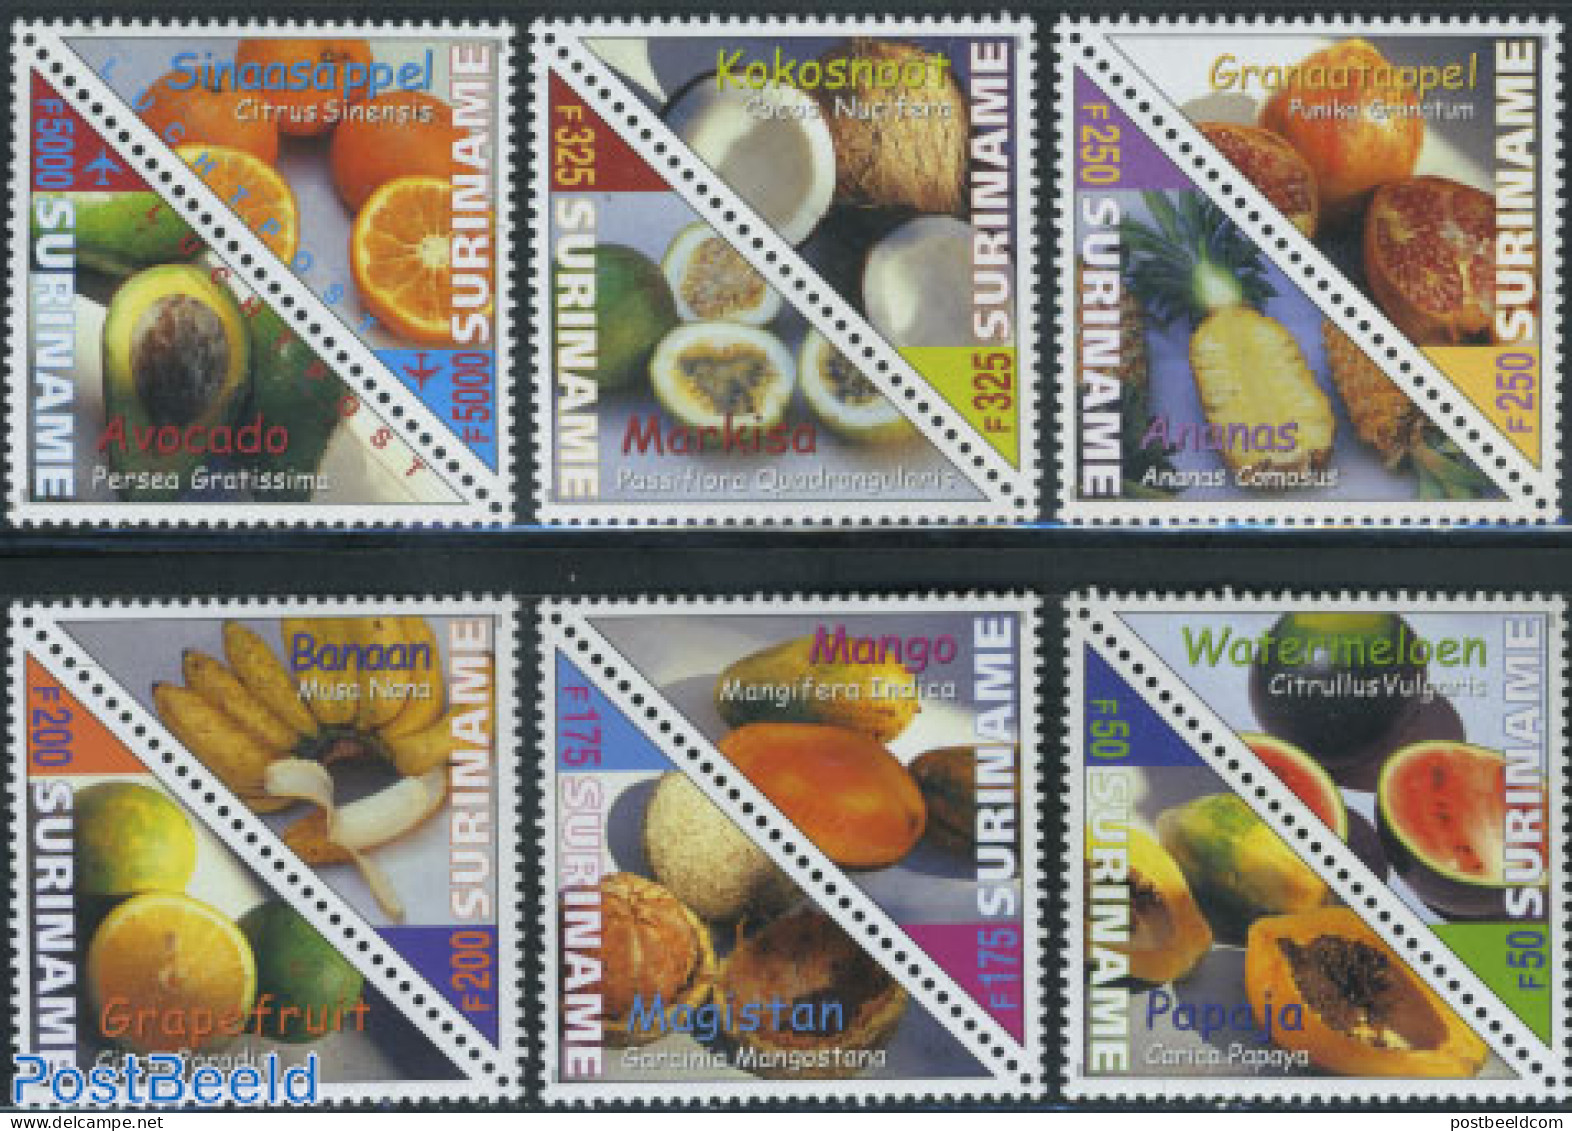 Suriname, Republic 2000 Tropical Fruit 6x2v, Mint NH, Nature - Fruit - Fruit